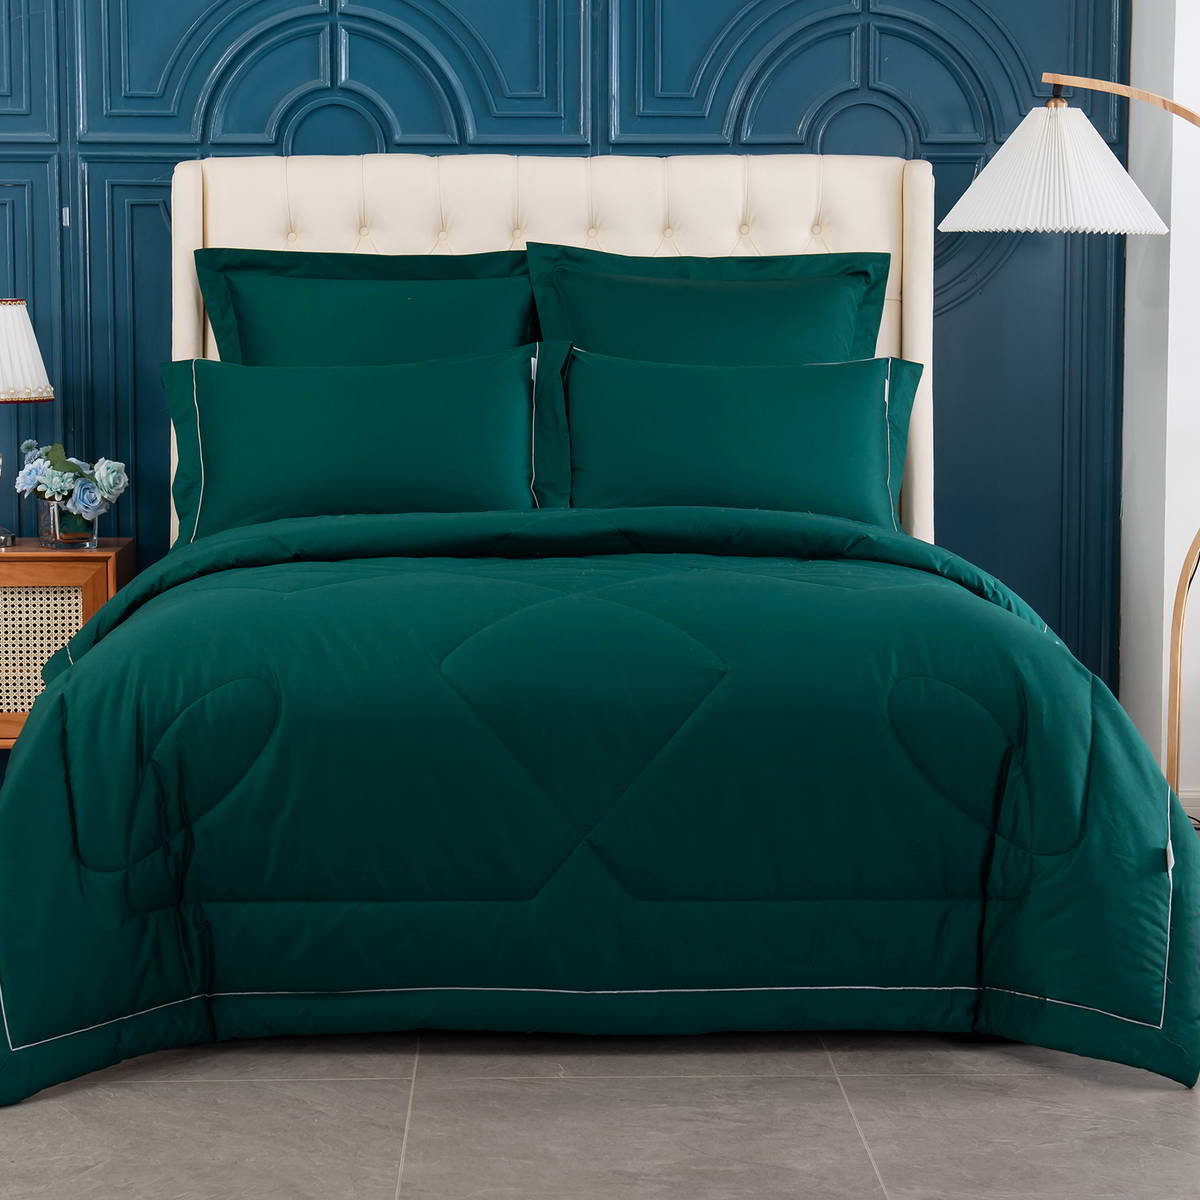 Комплект постельного белья с одеялом Sofi De Marko Маурицио зелёный Семейный/дуэт комплект постельного белья с одеялом sofi de marko маурицио зелёный семейный дуэт